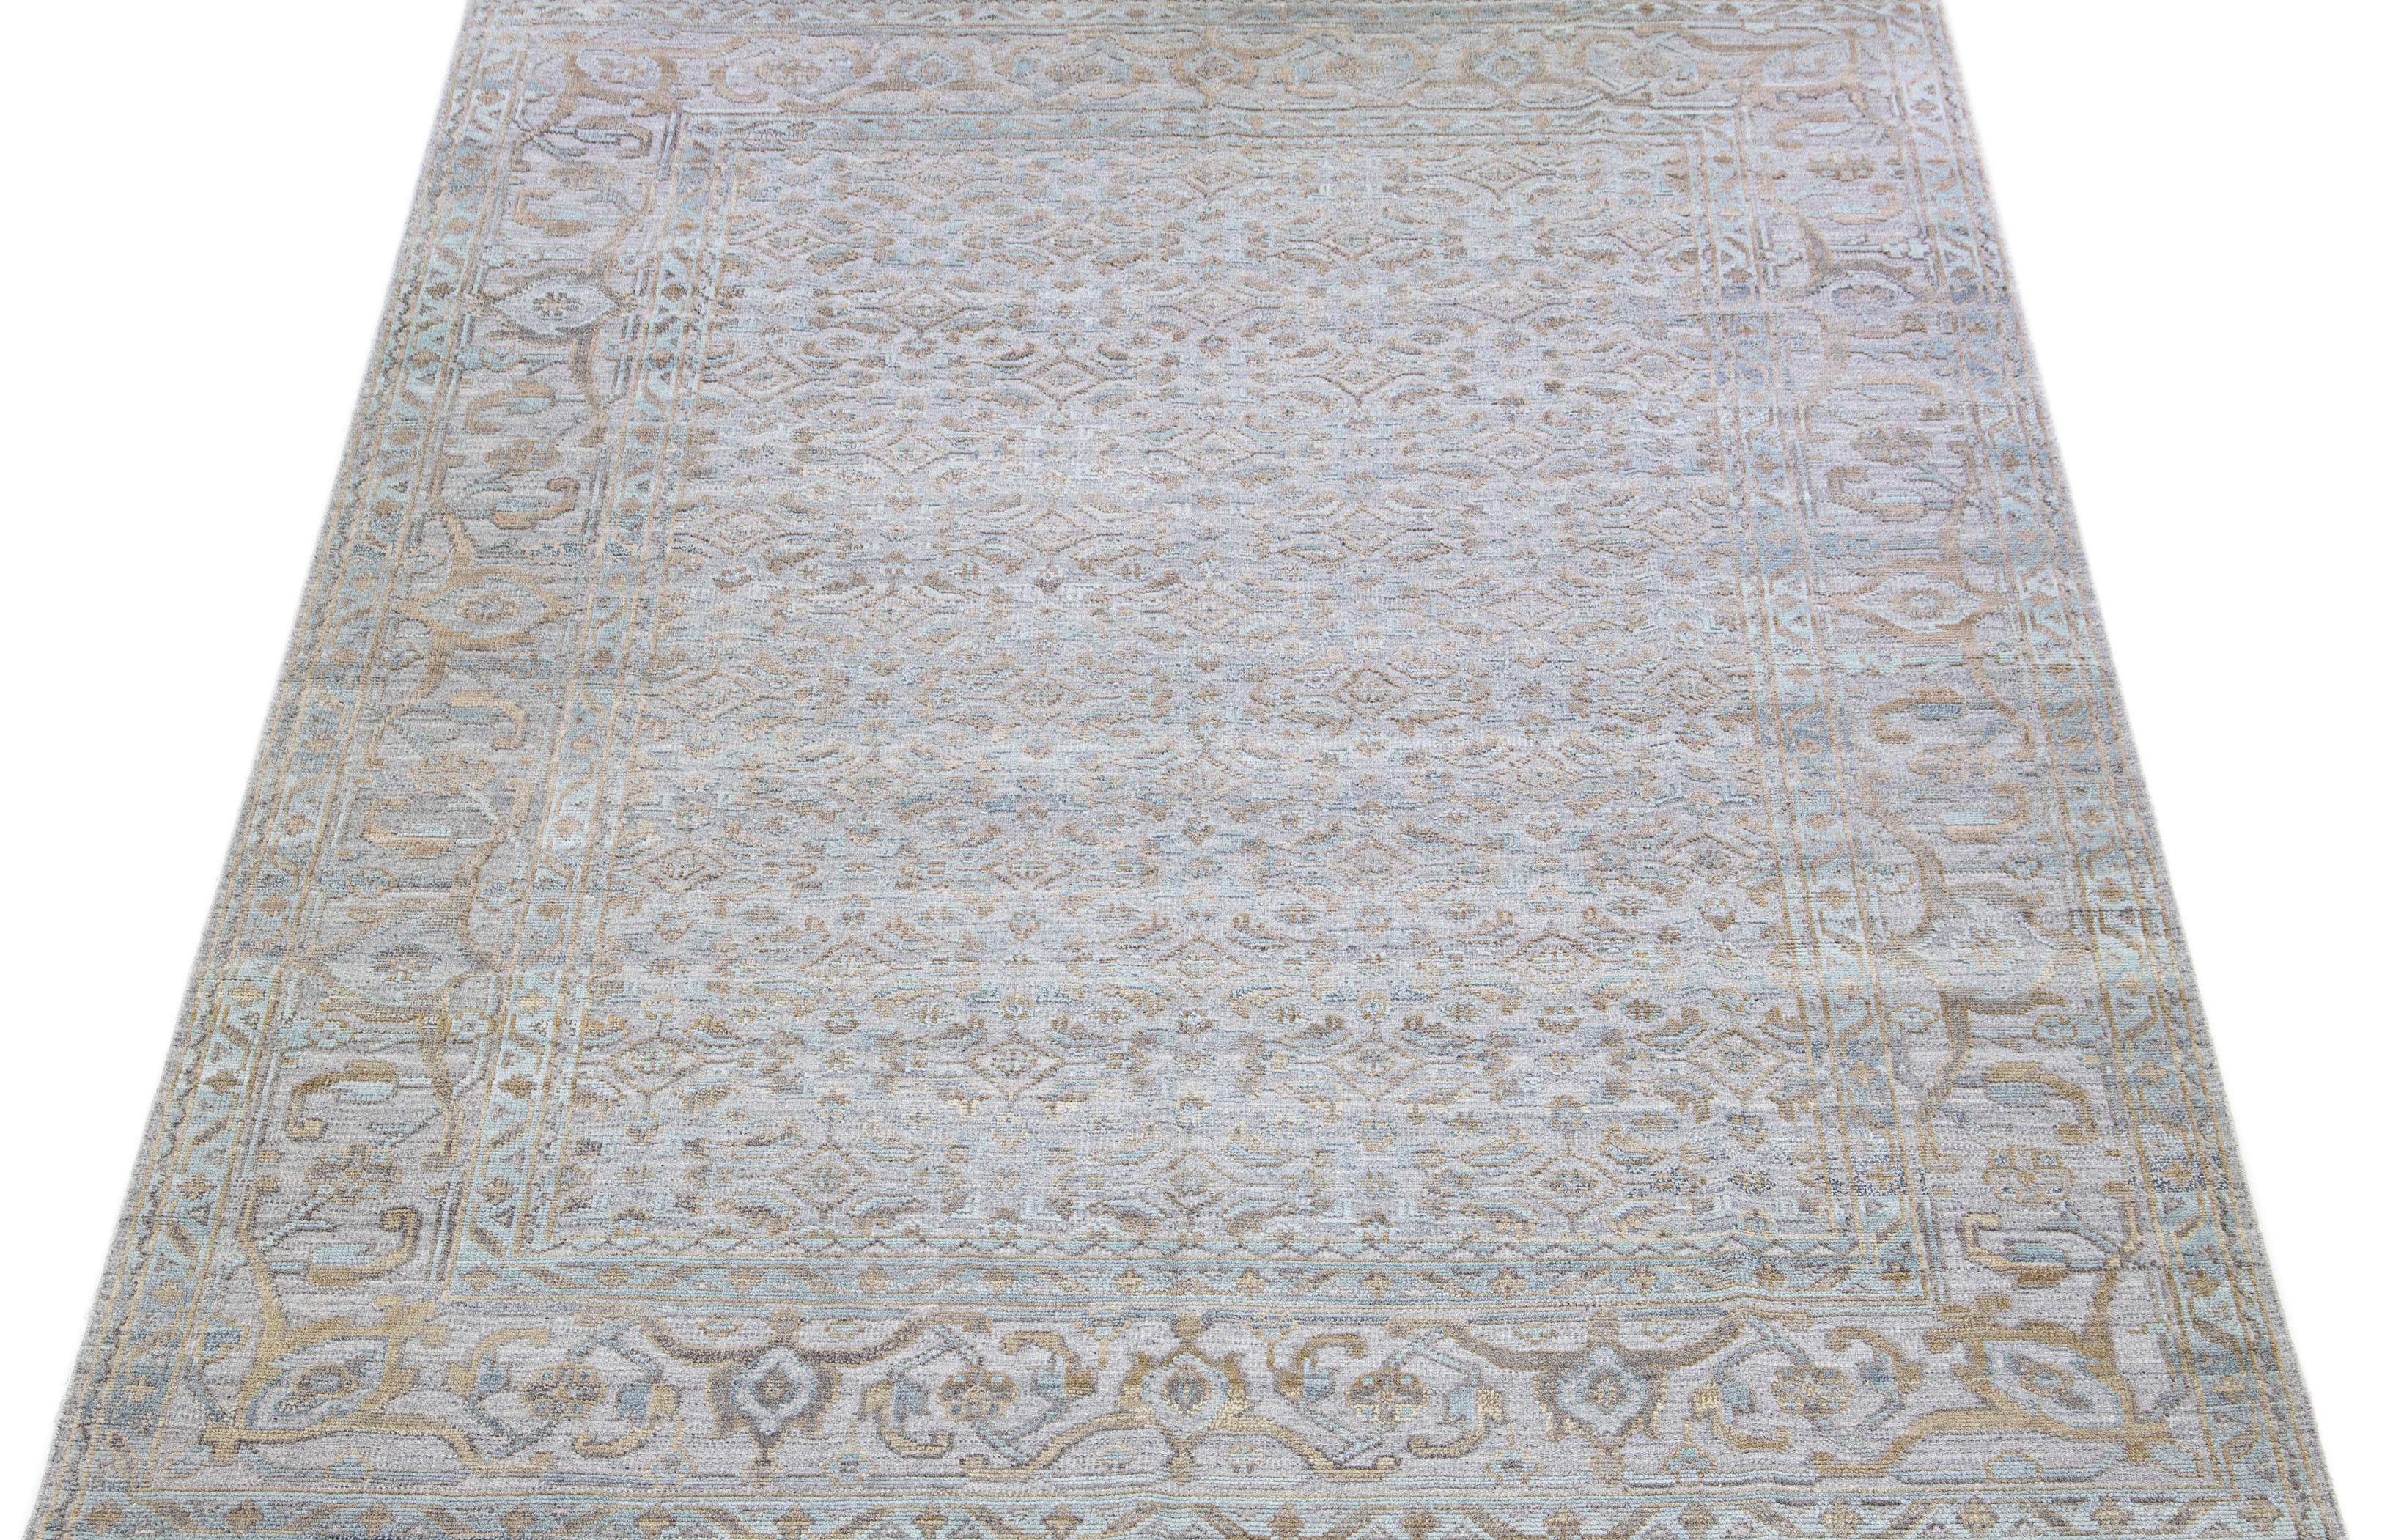 Schöner moderner handgeknüpfter Wollteppich mit grauem Feld. Dieser Transitional-Teppich hat goldene Akzente, die ein modernes, florales Allover-Muster im Mid-Century-Look schaffen. 

Dieser Teppich misst 10' x 14'.

Unsere Teppiche werden vor dem